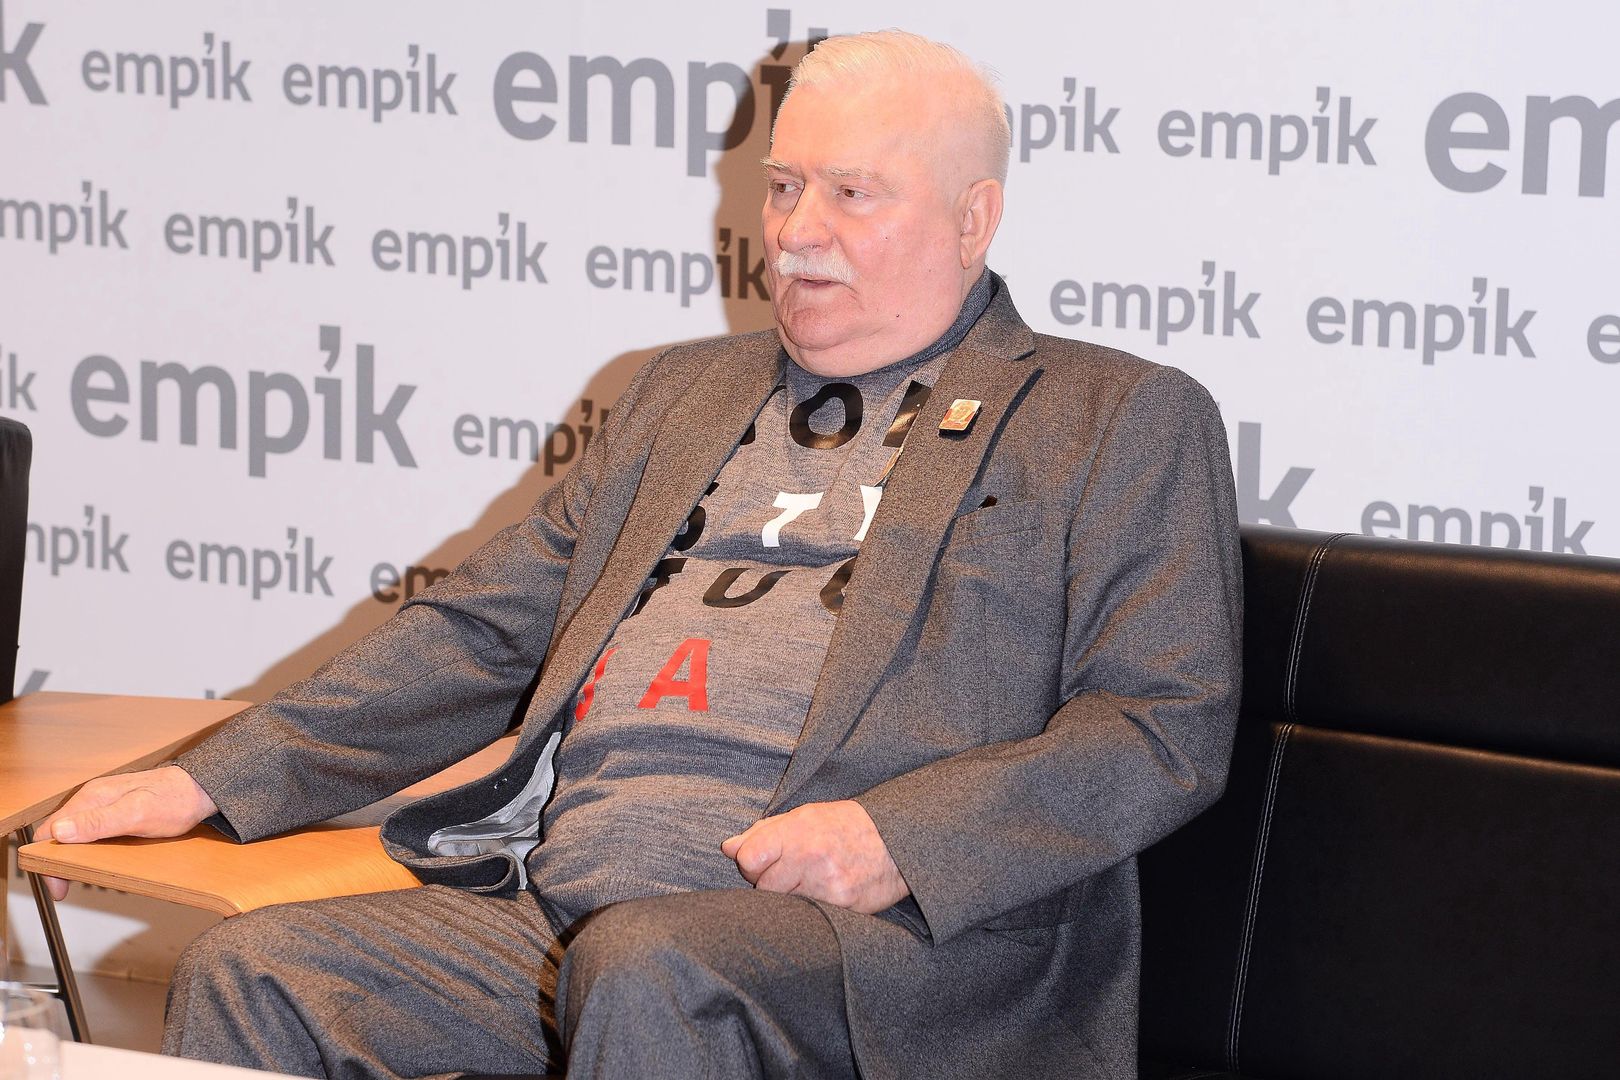 Żona "mnie z domu wyrzuci". Lech Wałęsa mówi o trzynastej emeryturze